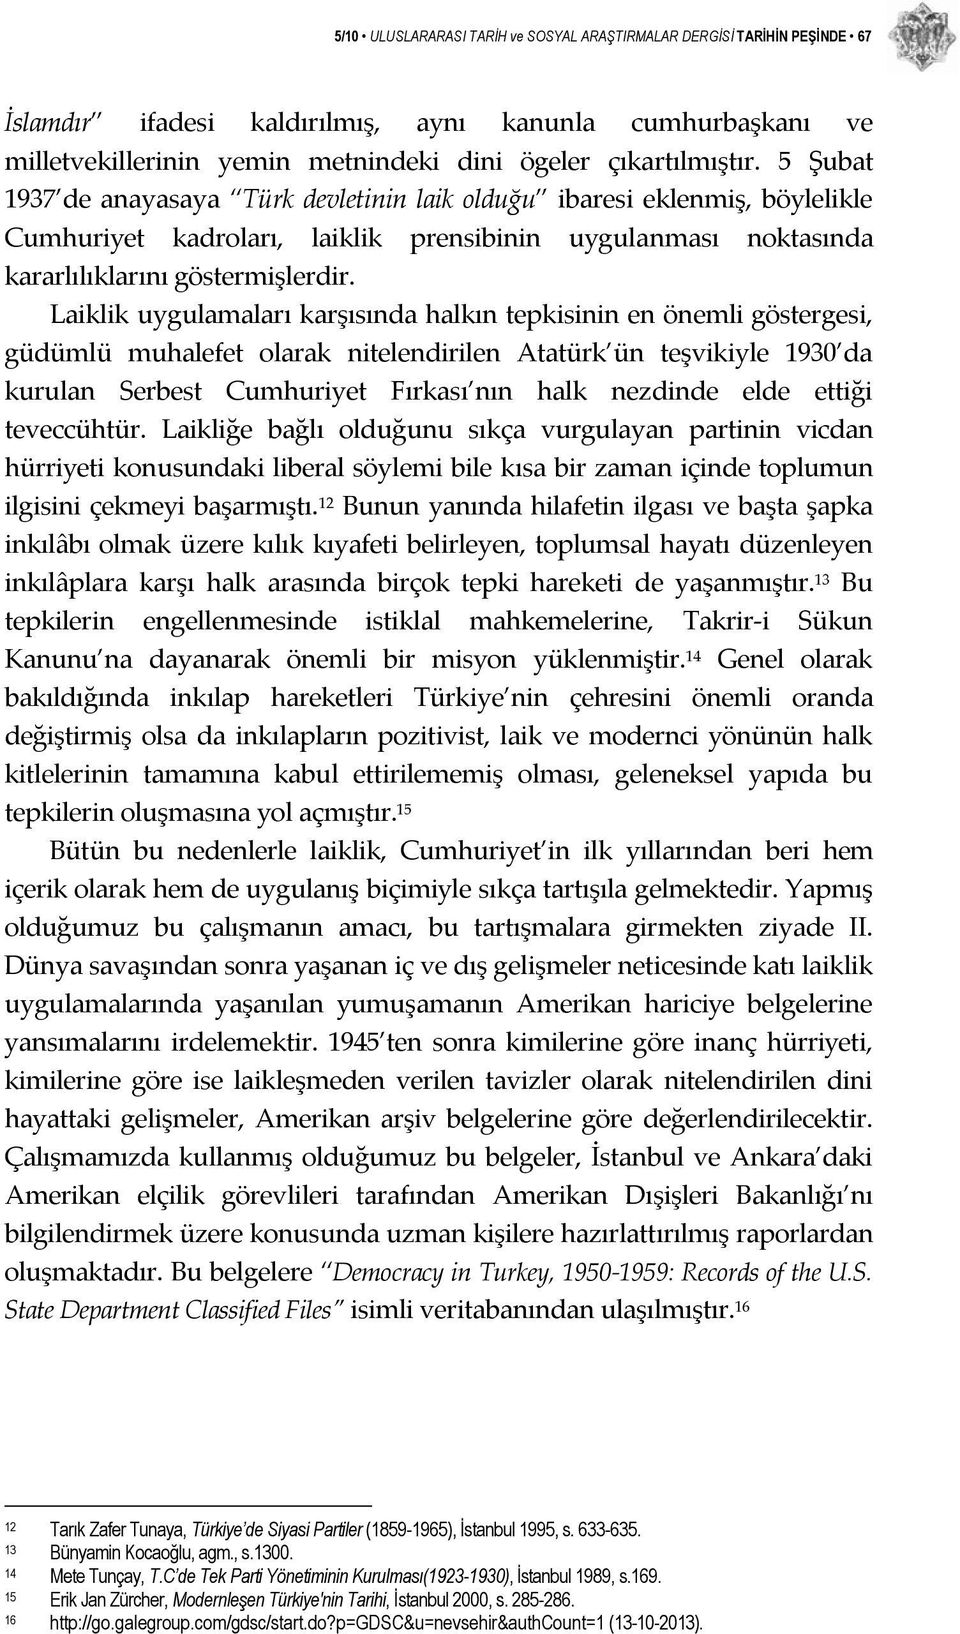 Laiklik uygulamaları karşısında halkın tepkisinin en önemli göstergesi, güdümlü muhalefet olarak nitelendirilen Atatürk ün teşvikiyle 1930 da kurulan Serbest Cumhuriyet Fırkası nın halk nezdinde elde